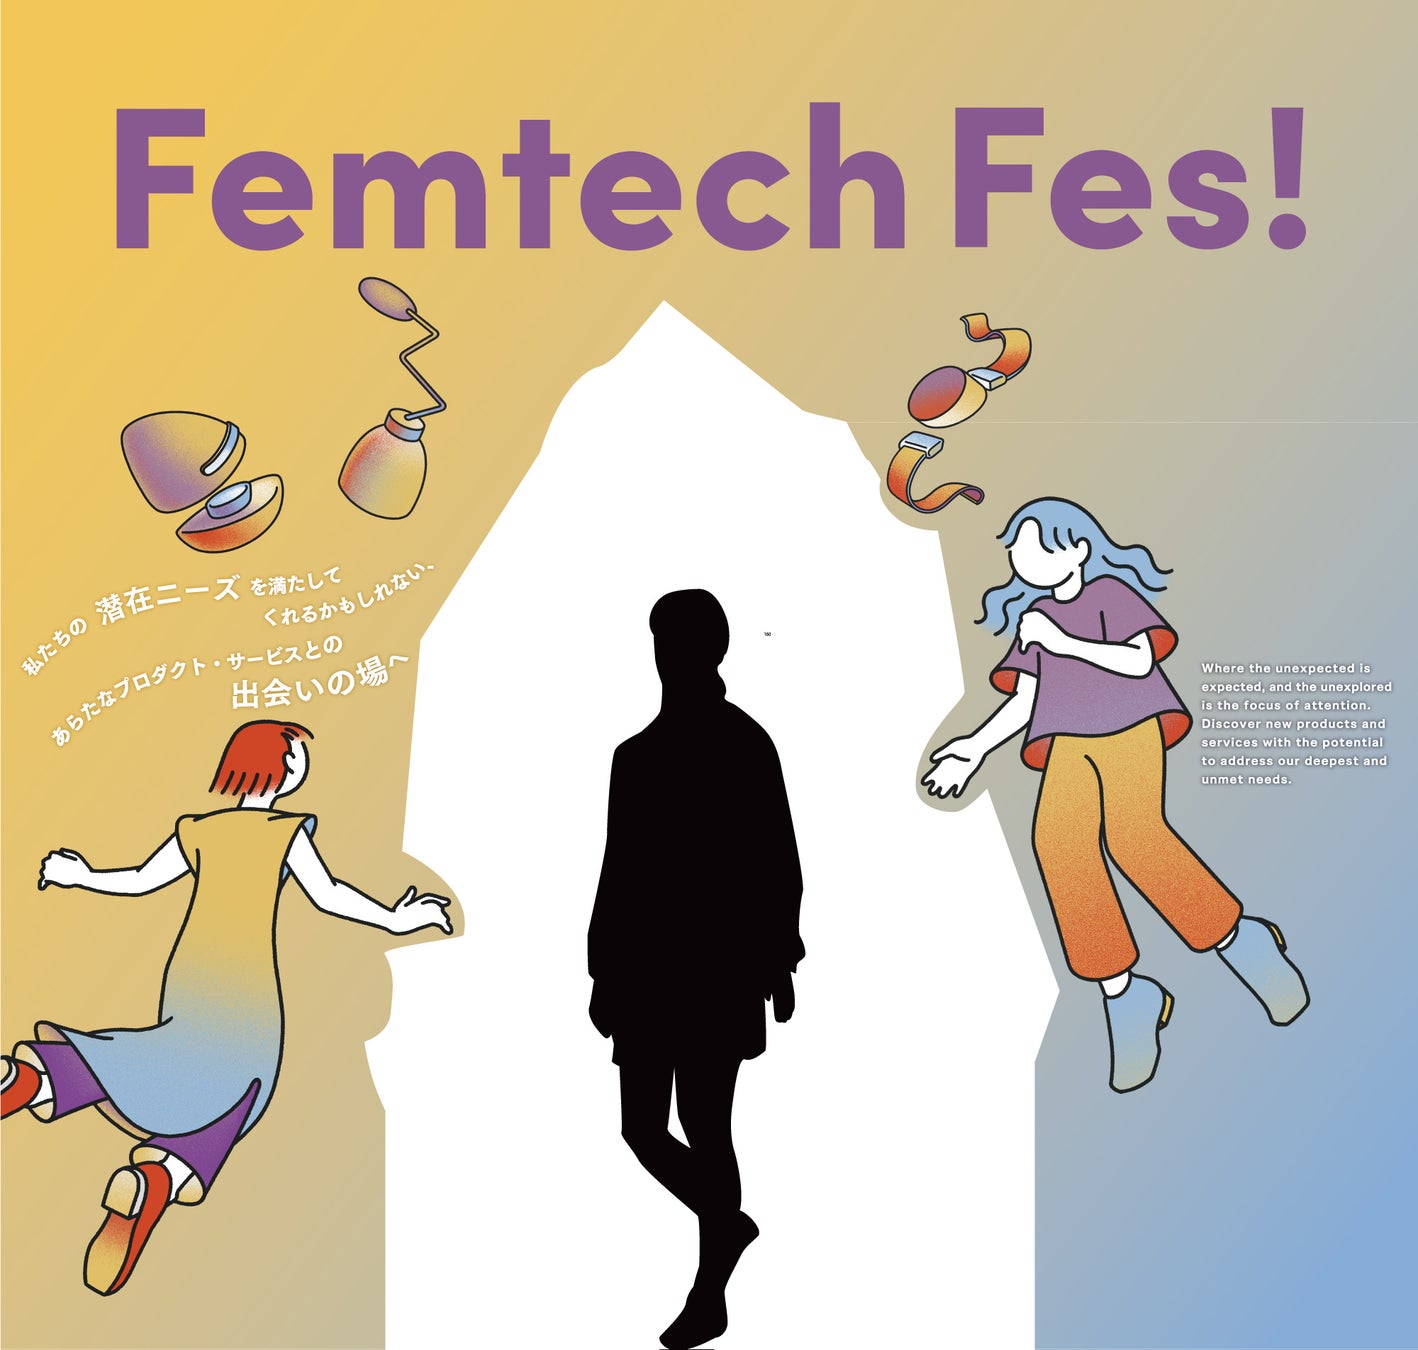 【fermata】開催直前！グローバルフェムテックイベント「Femtech Fes! 」の見どころ公開